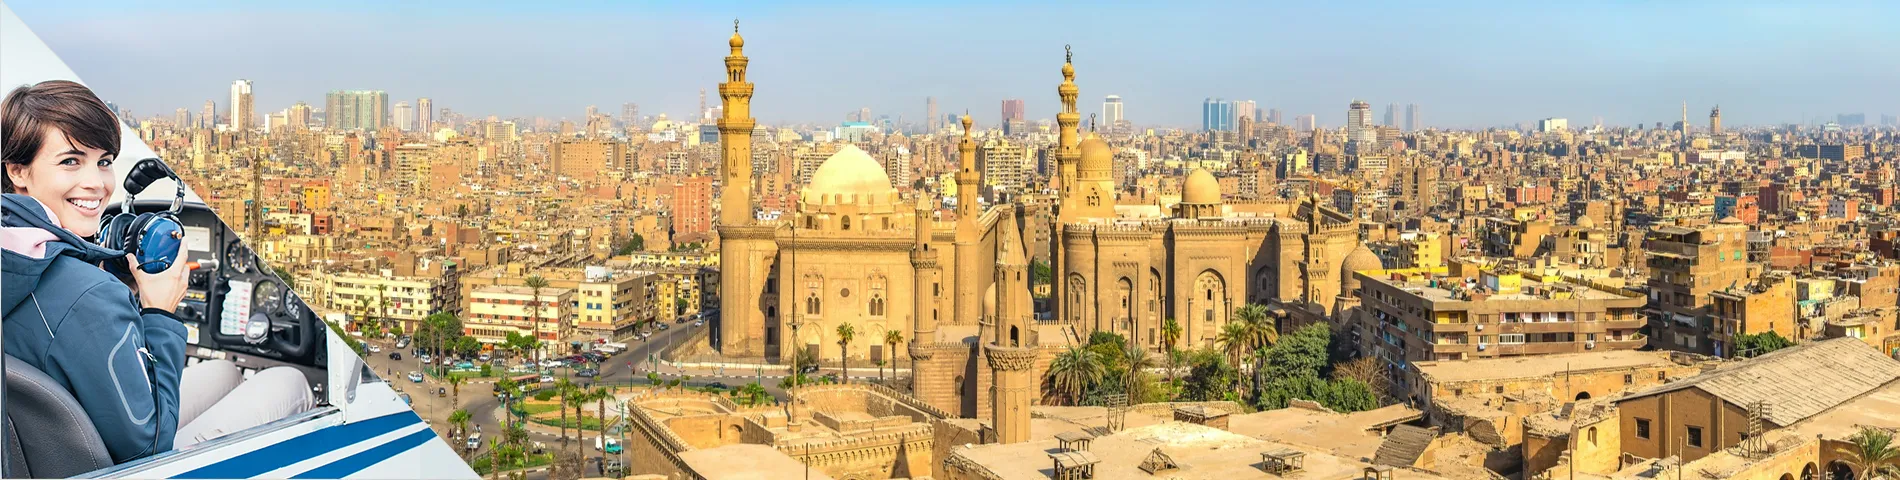 Caïro - Arabisch  voor de luchtvaart